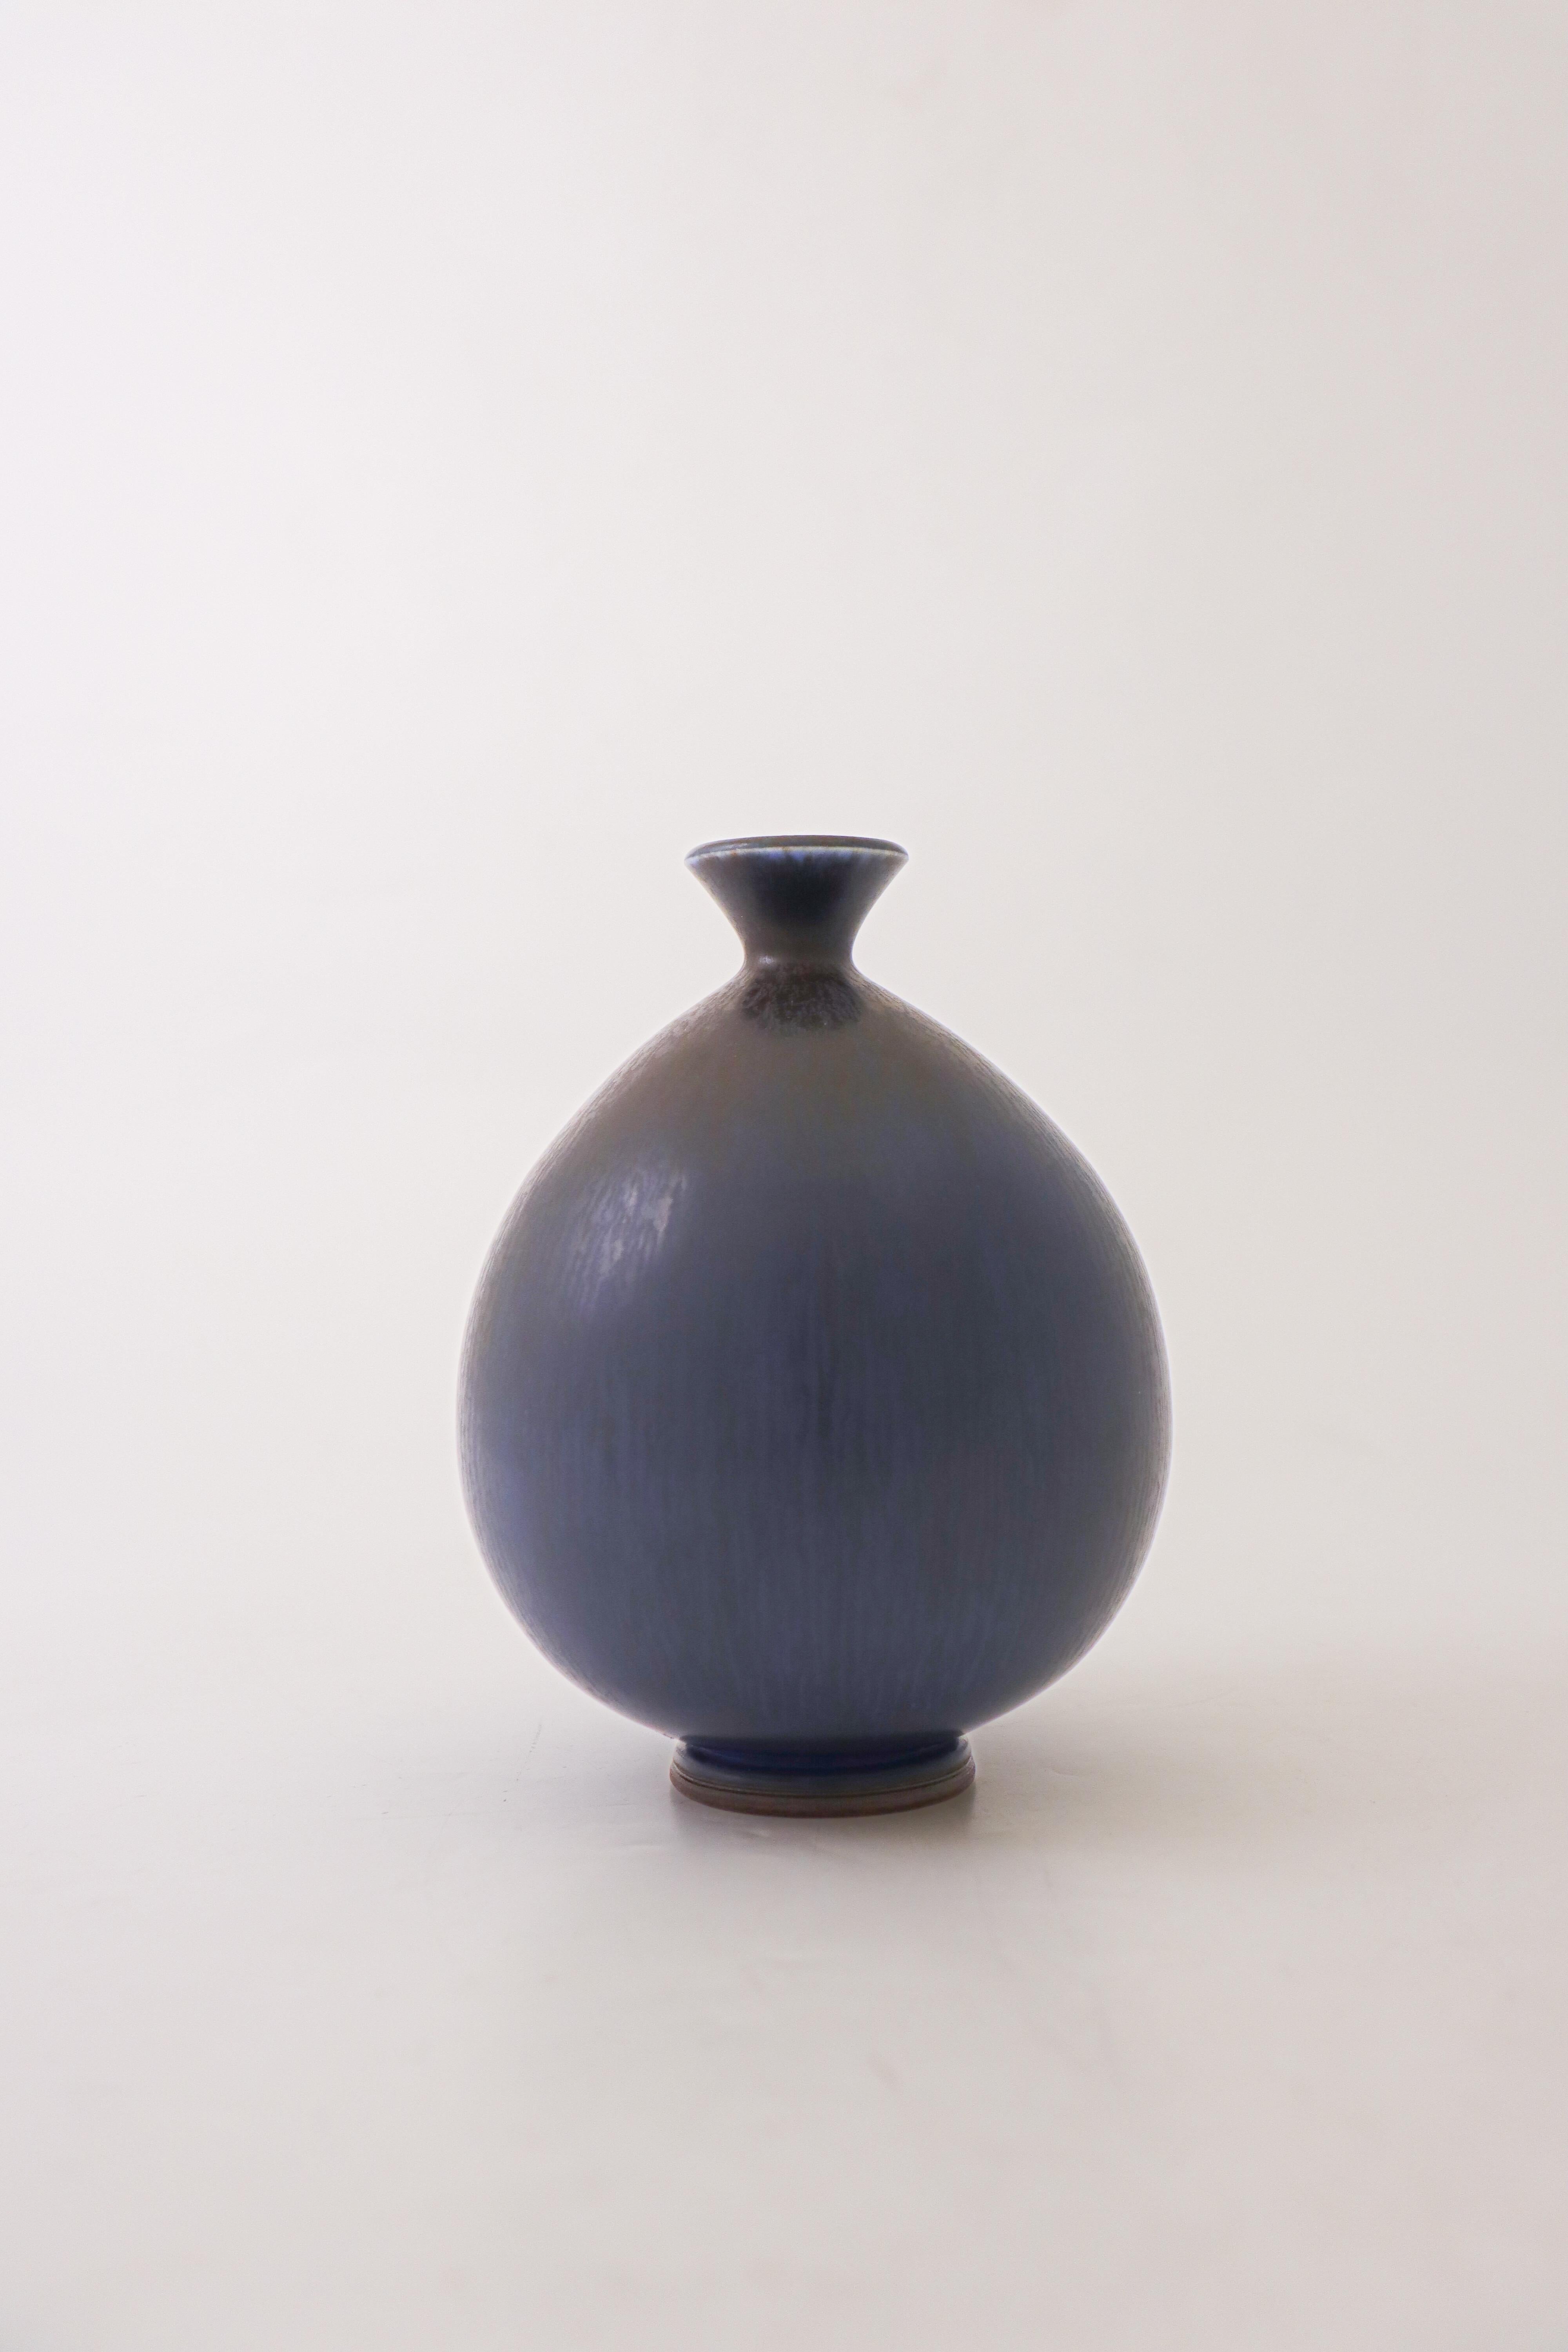 A deep blue vase designed by Berndt Friberg at Gustavsberg in Stockholm, the vase is 15 cm (6